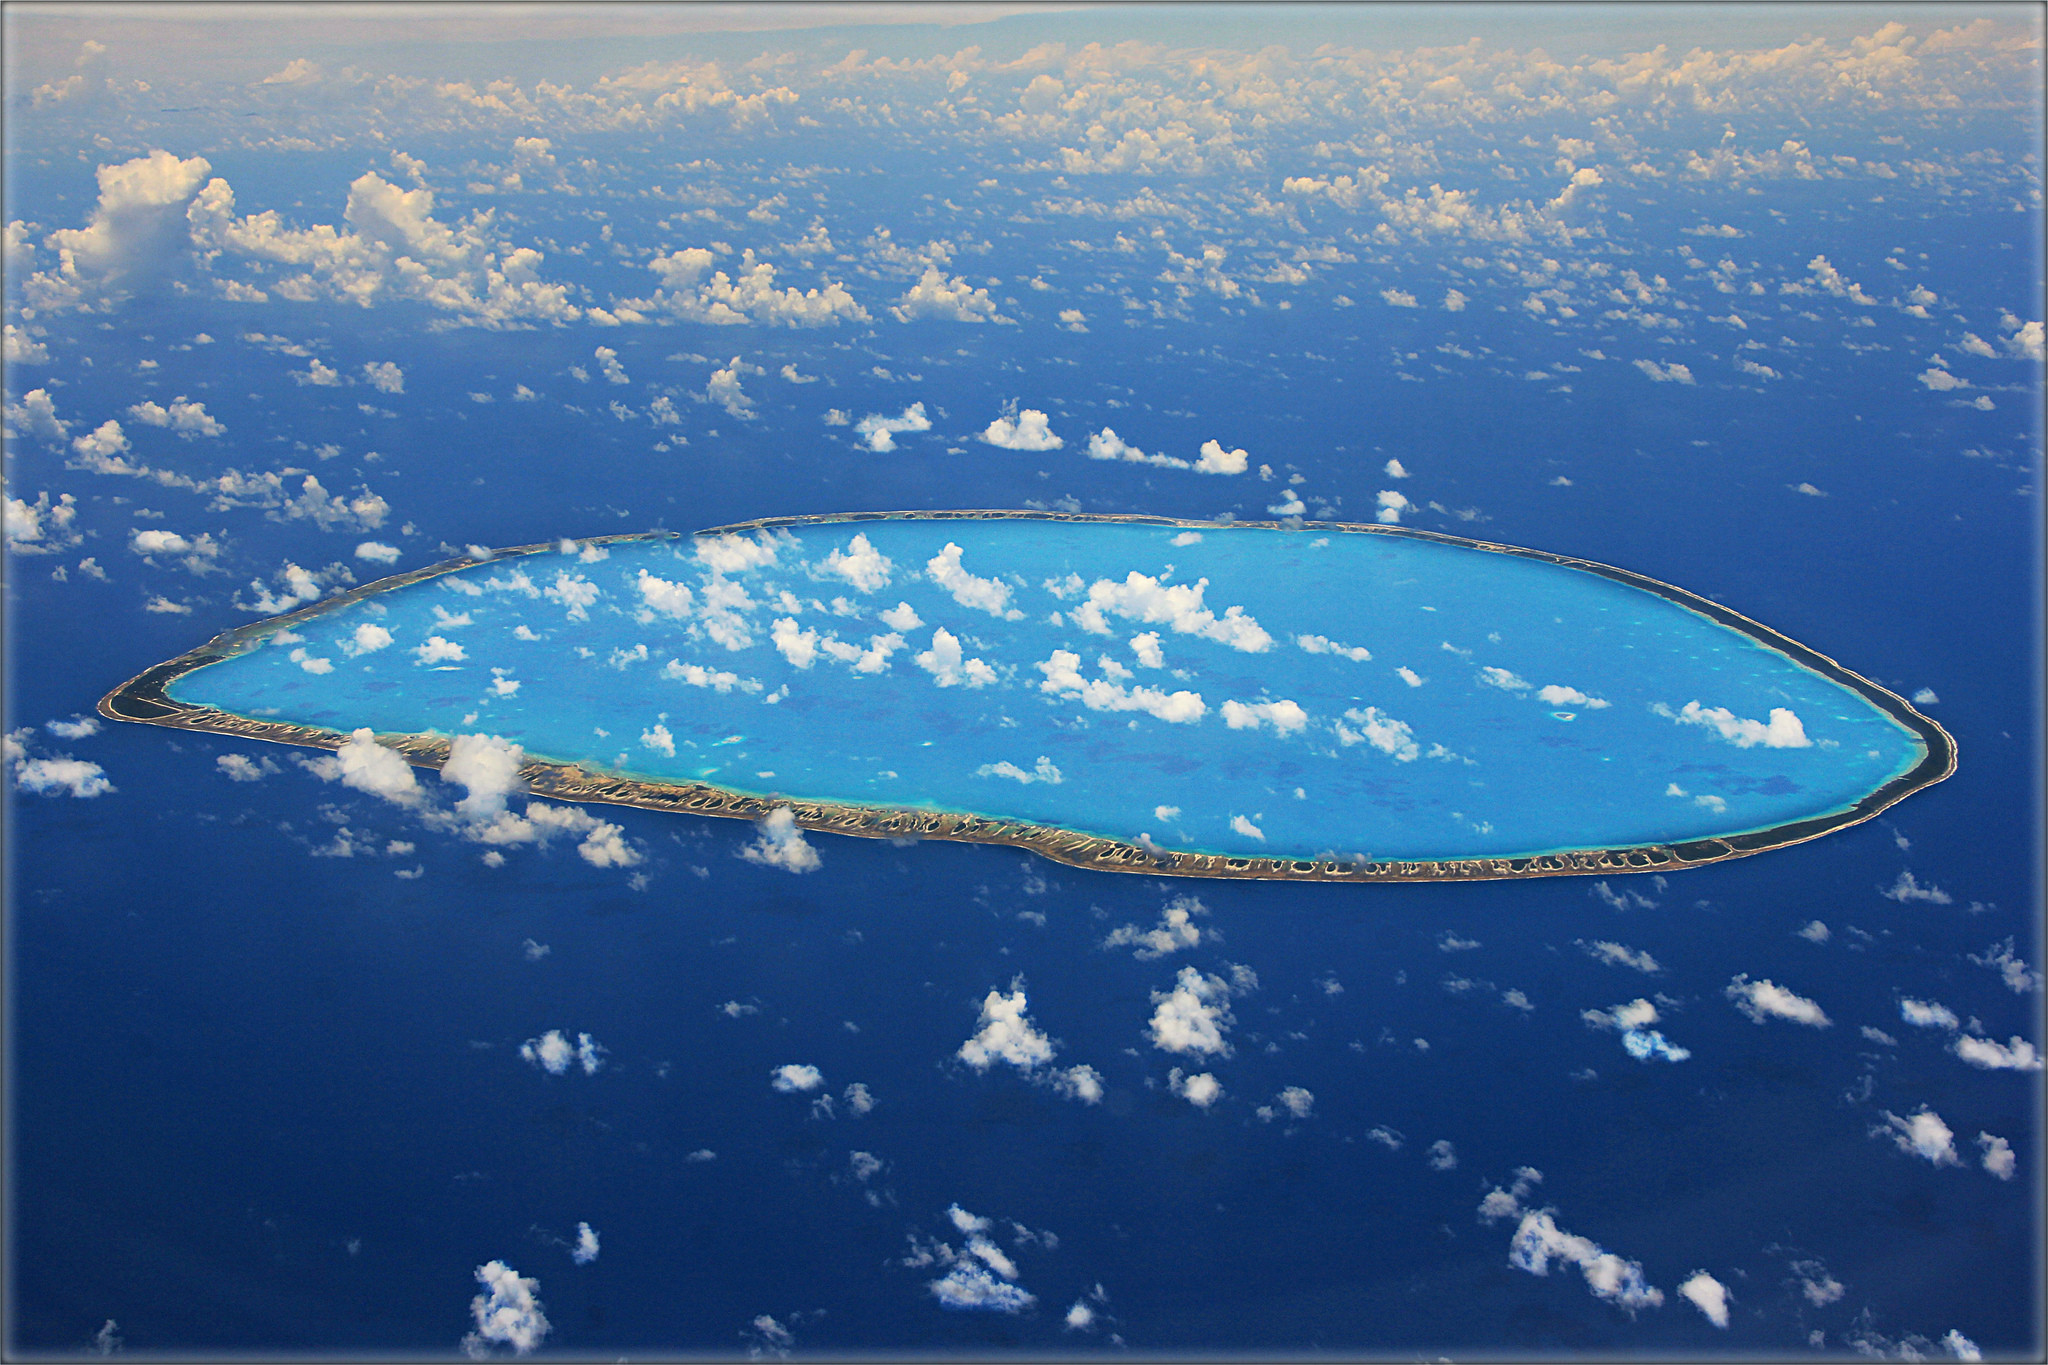 Кольцевой остров. Коралловый остров Туамоту. Архипелаг Туамоту острова россиян. Остров в архипелаге Туамоту Беллинсгаузен. Атолл в тихом океане.